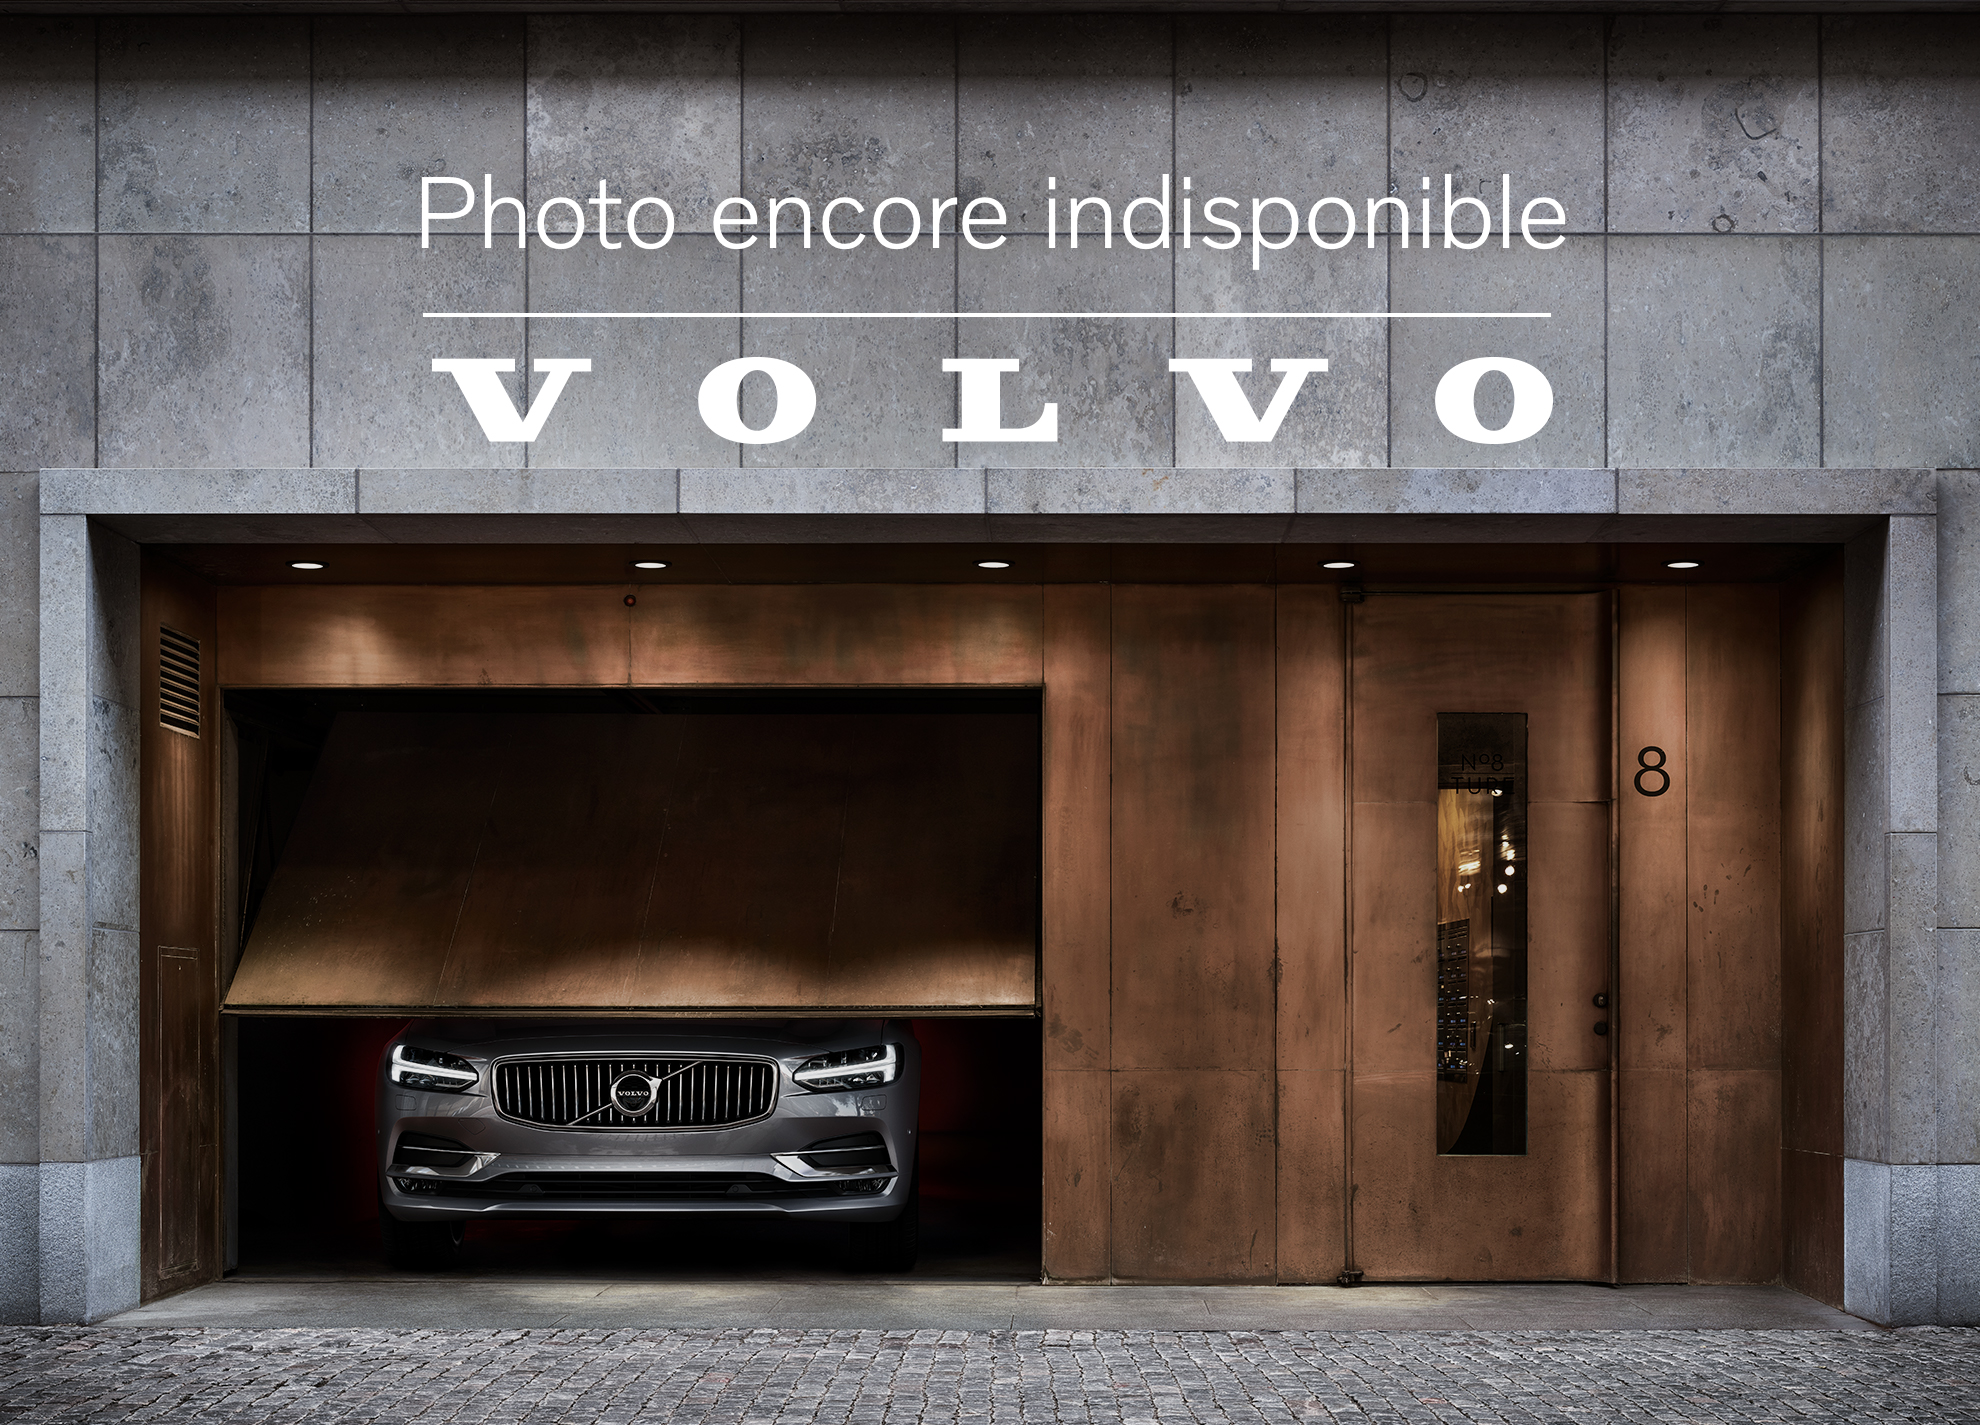 Volvo  T5 AWD Momentum